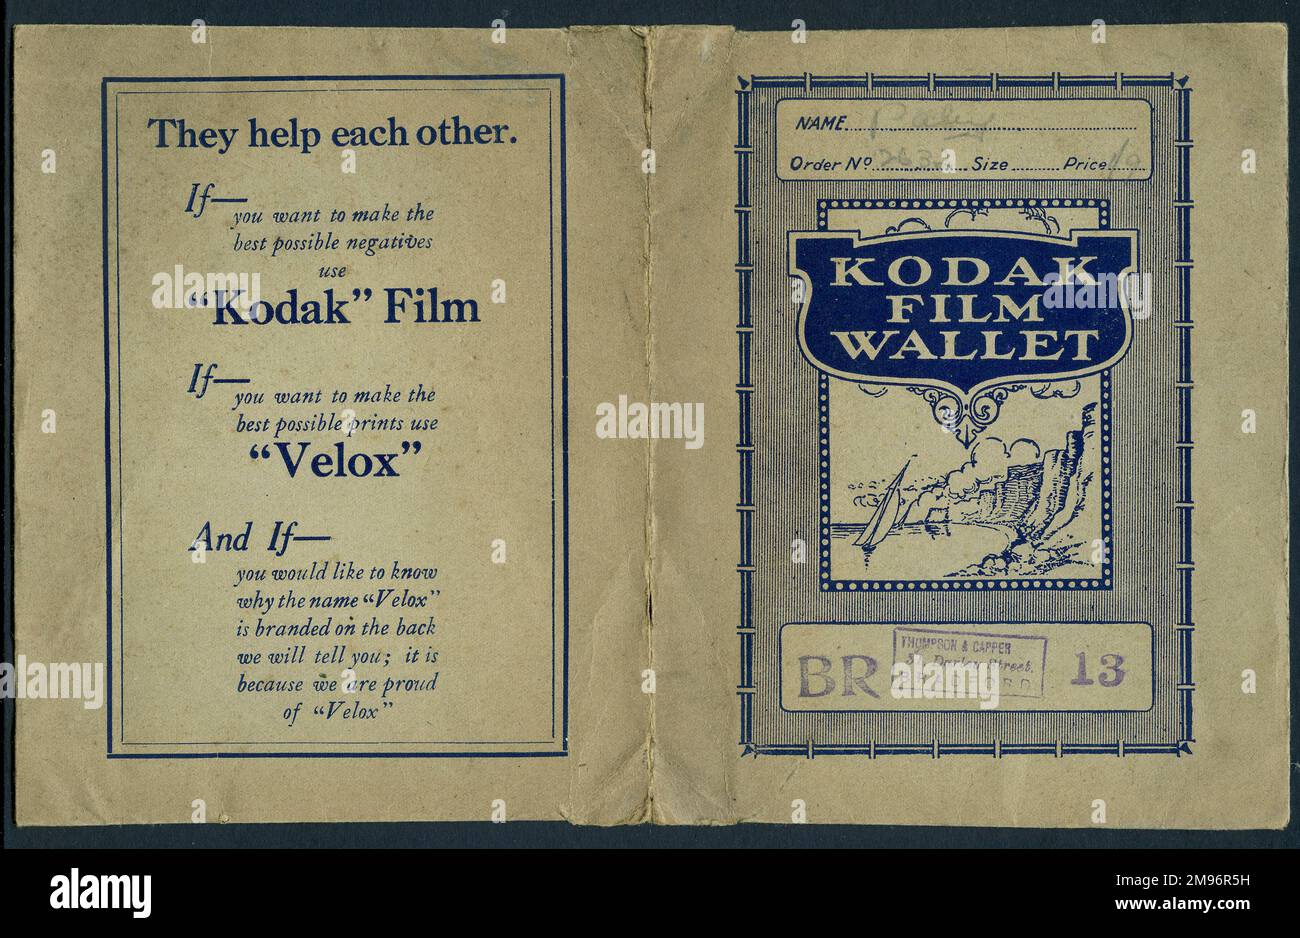 Portafoglio a stampa fotografica, pubblicità Kodak Film, con il marchio di gomma dello sviluppatore, Thompson & Capper di Bradford. Foto Stock